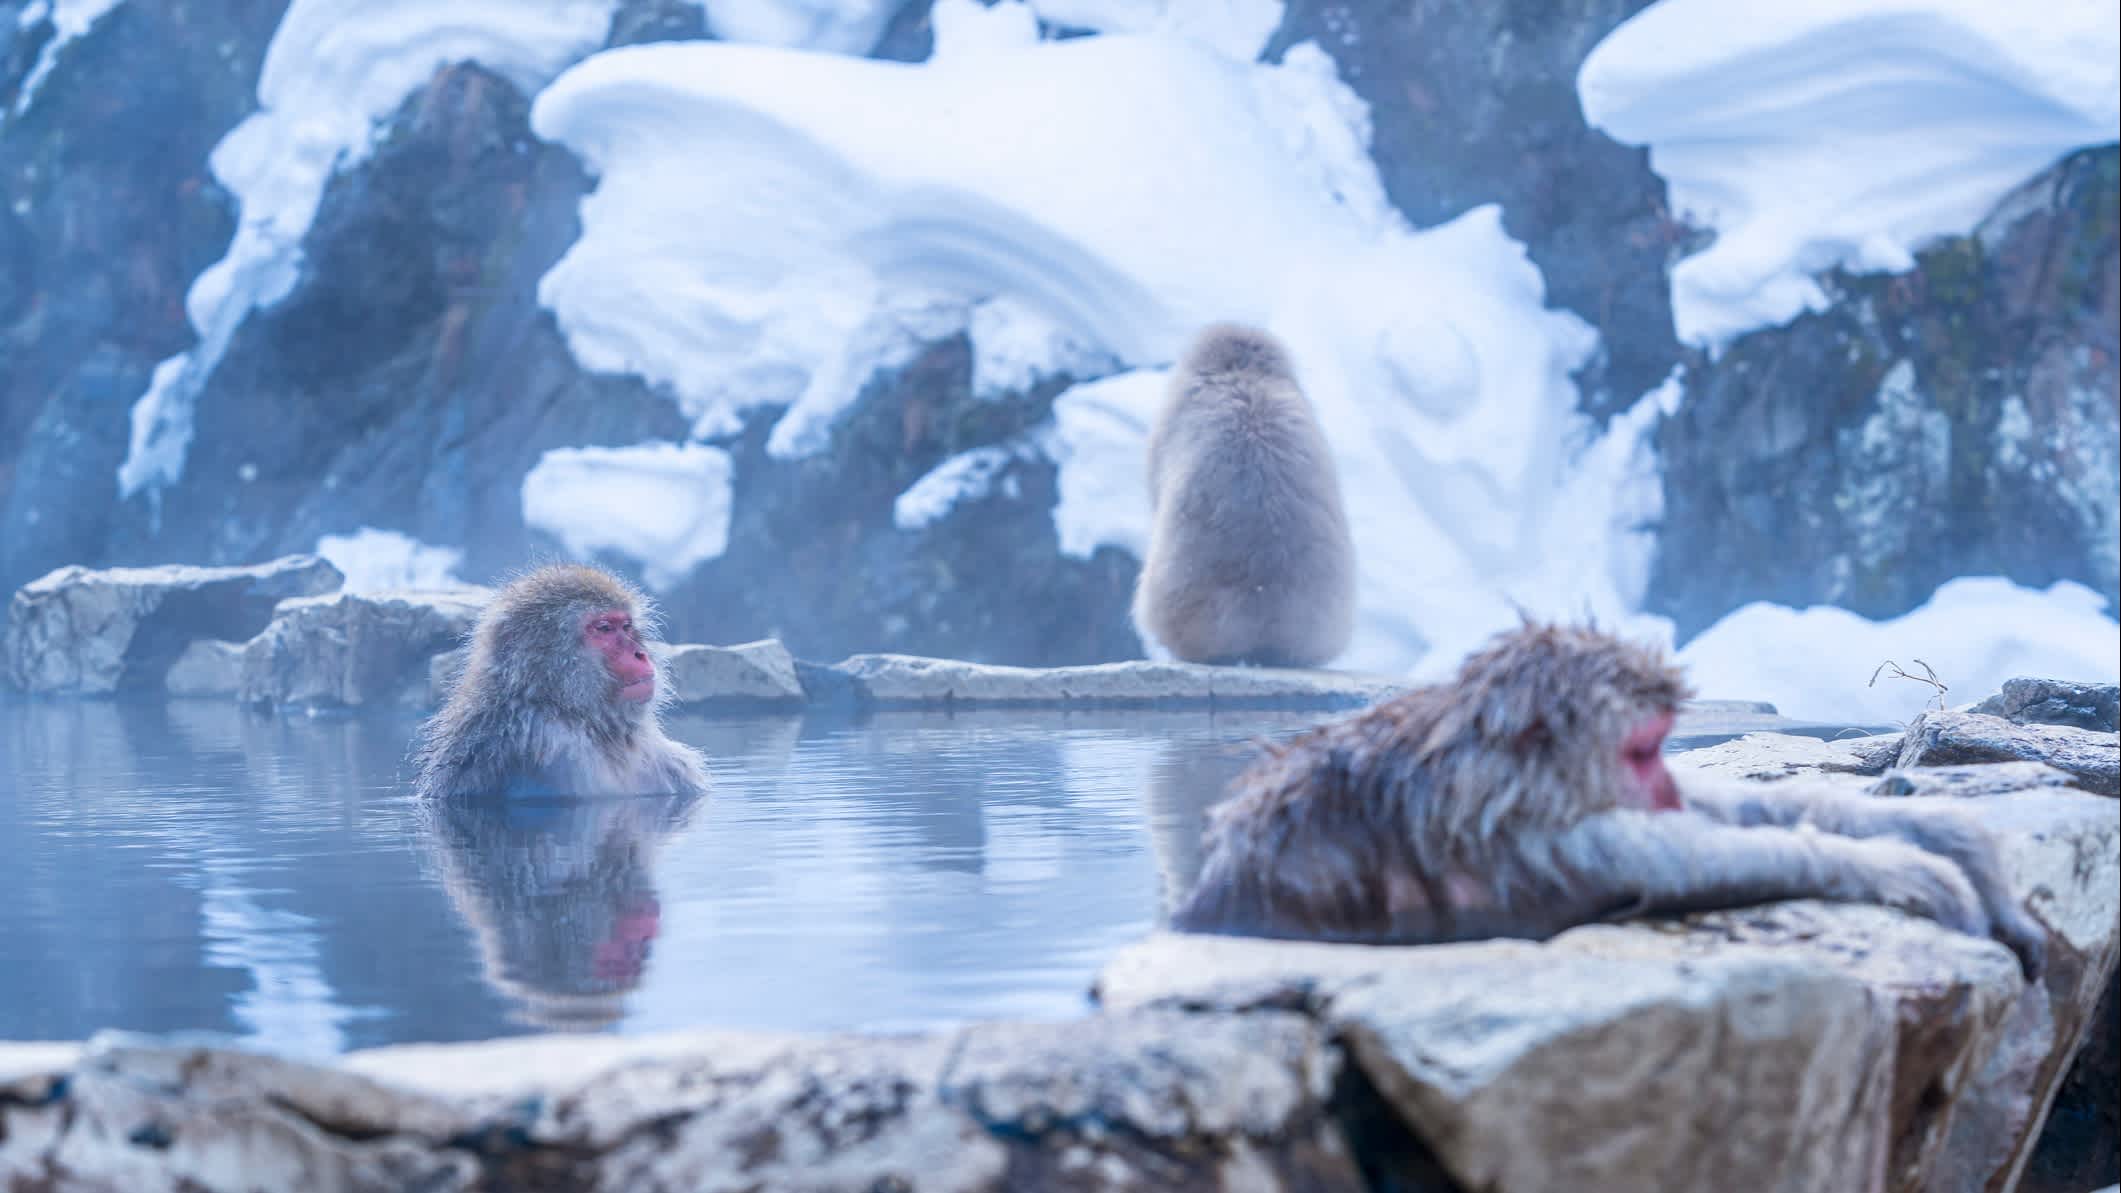 Des singes dans une source chaude sous la neige, Japon